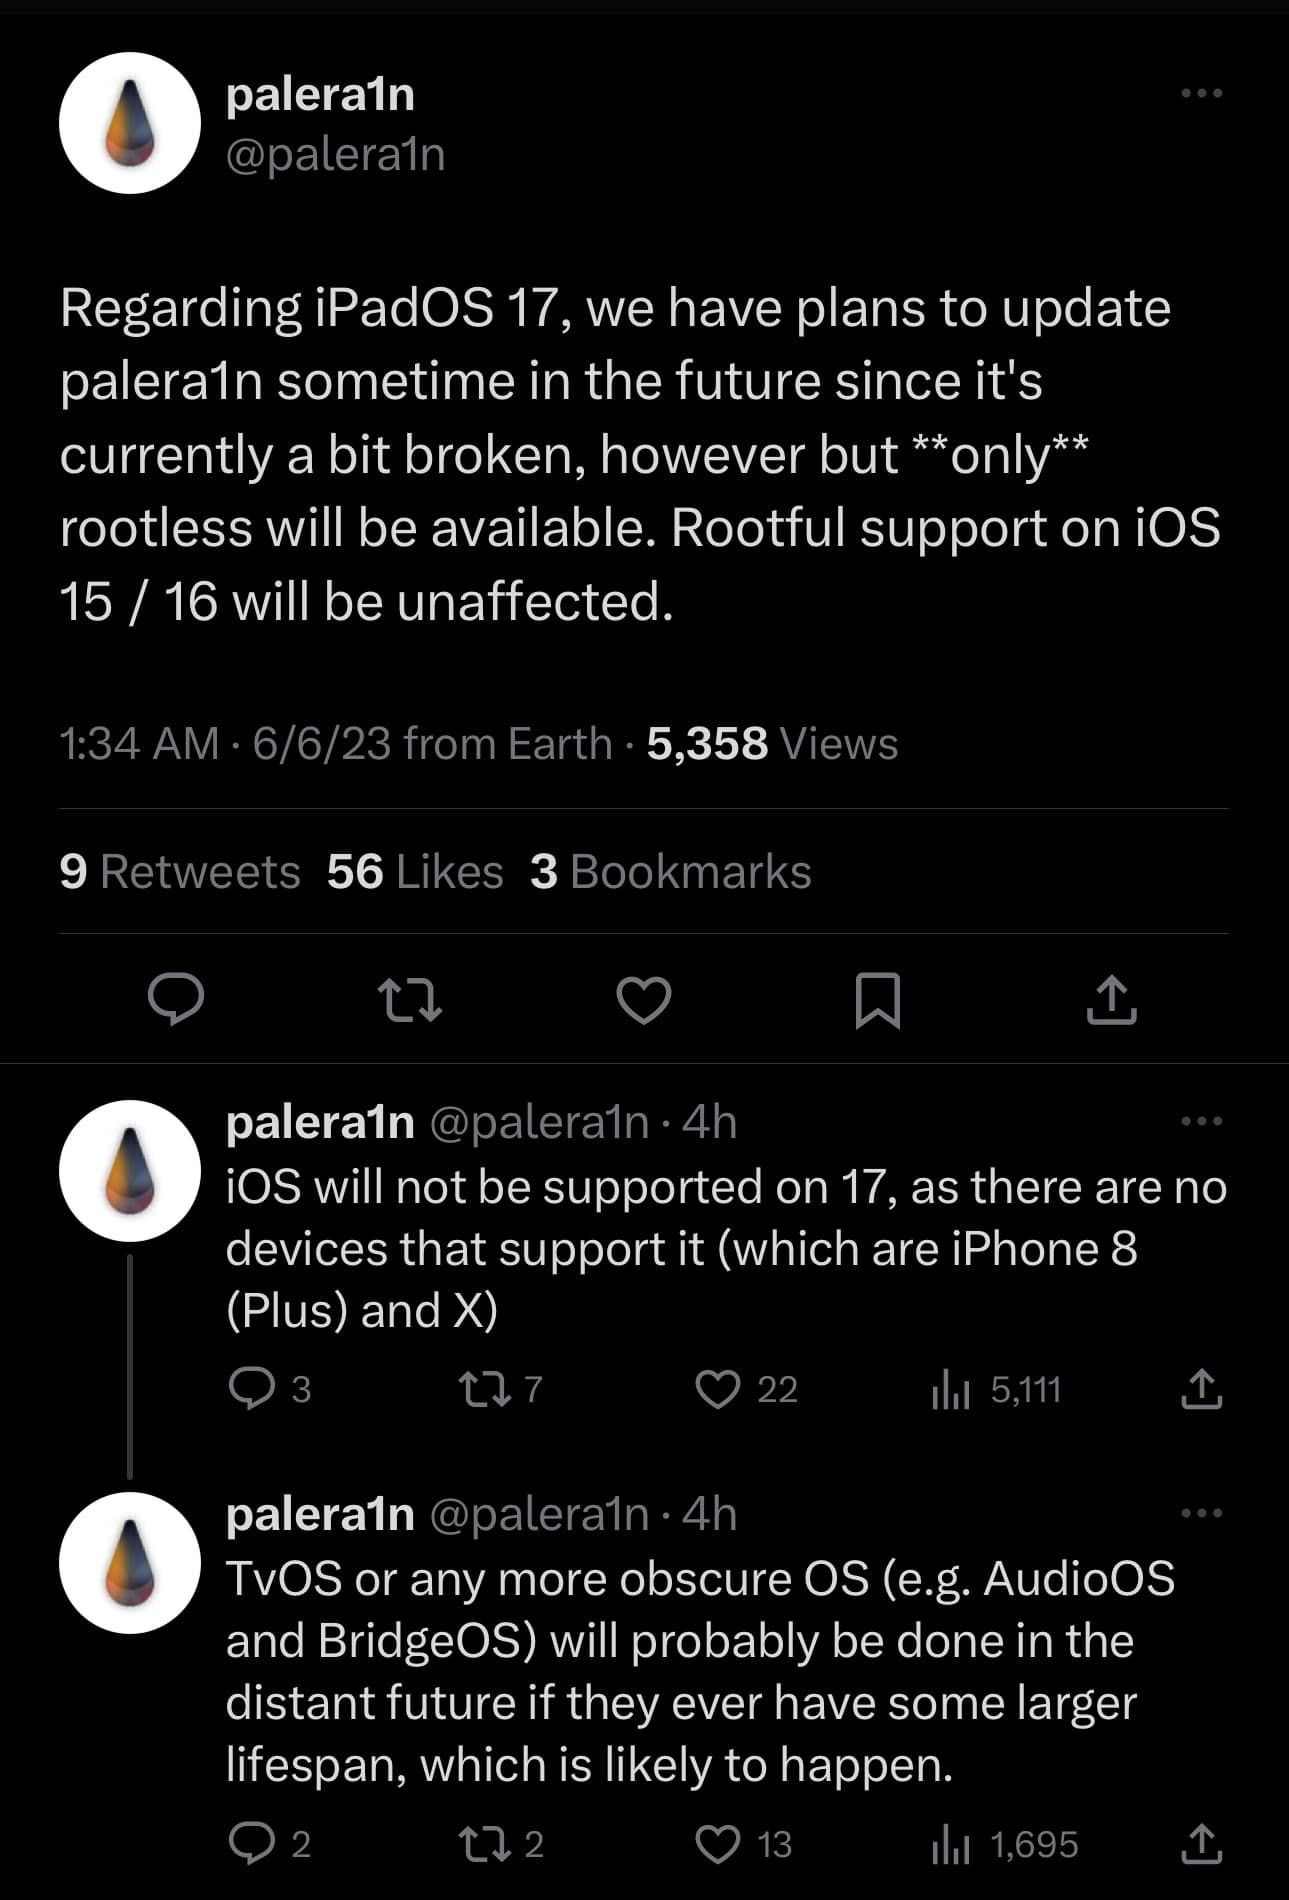 palera1n team confirms plan to support iPadOS 17.